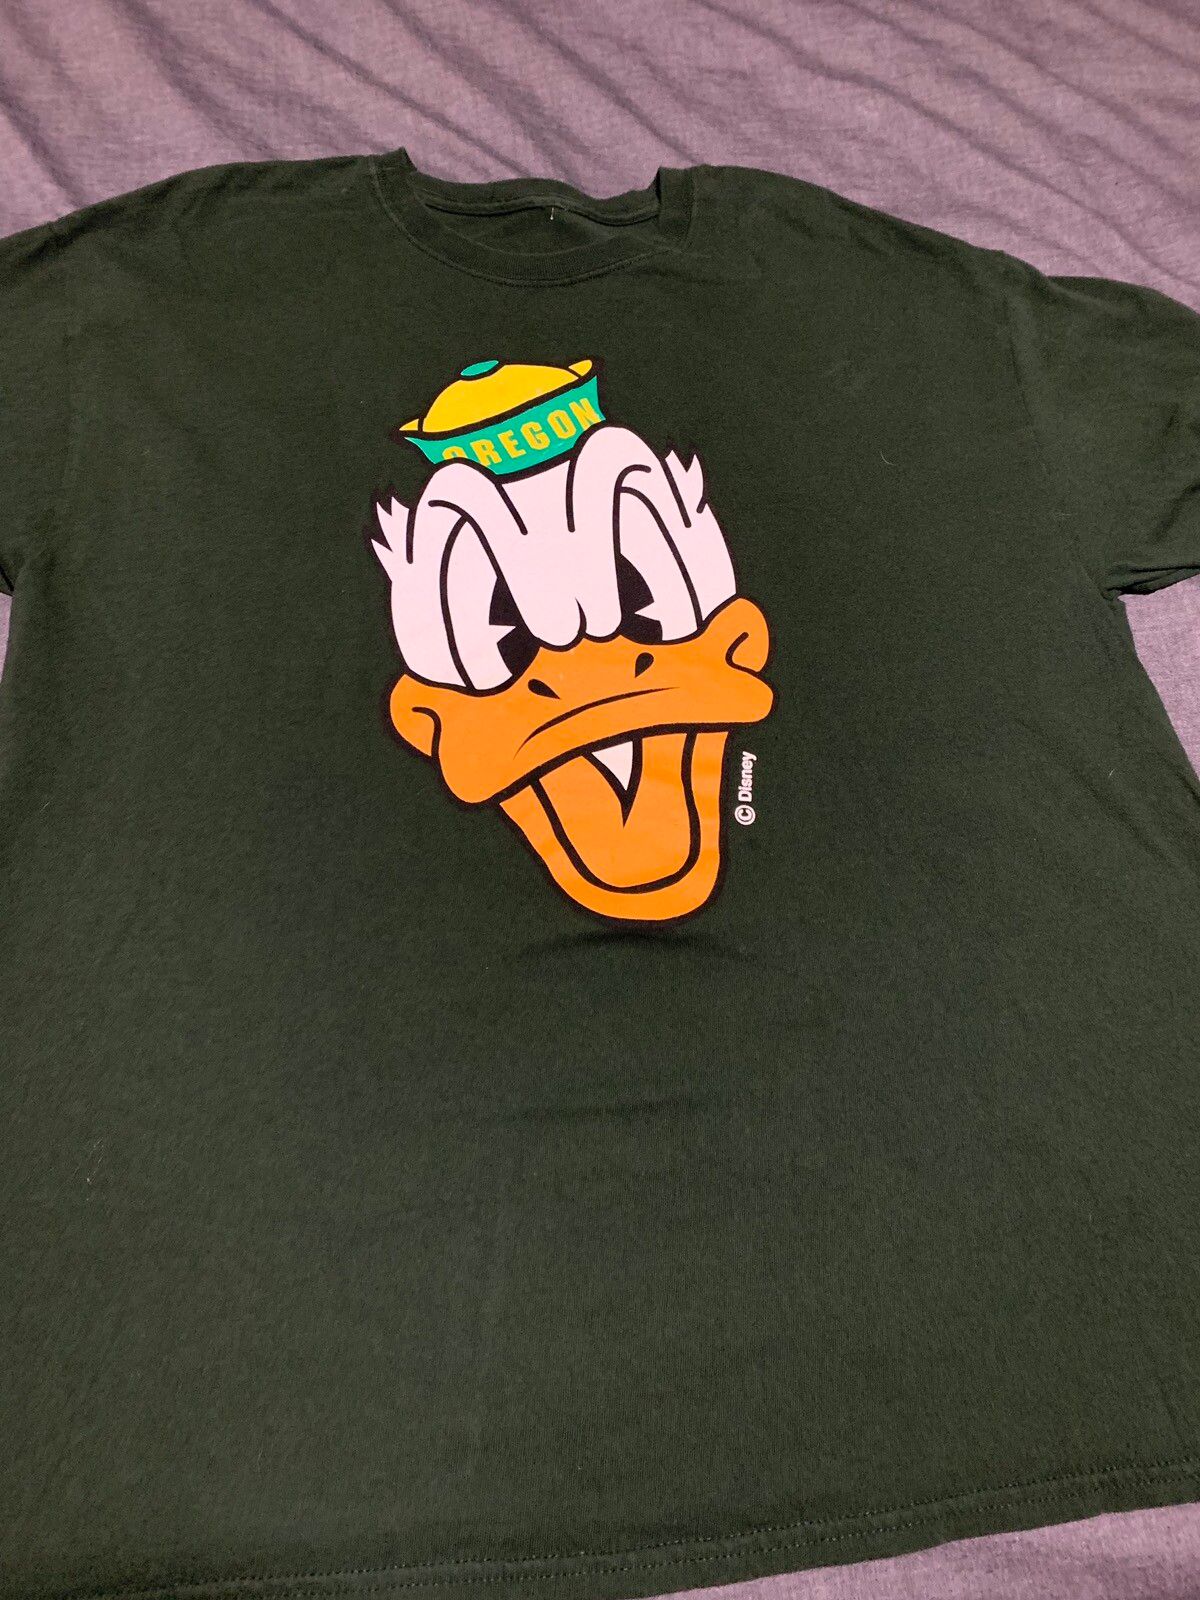 Disney Donald Duck - Oregon Duck - Large Size US L / EU 52-54 / 3 - 1 Preview